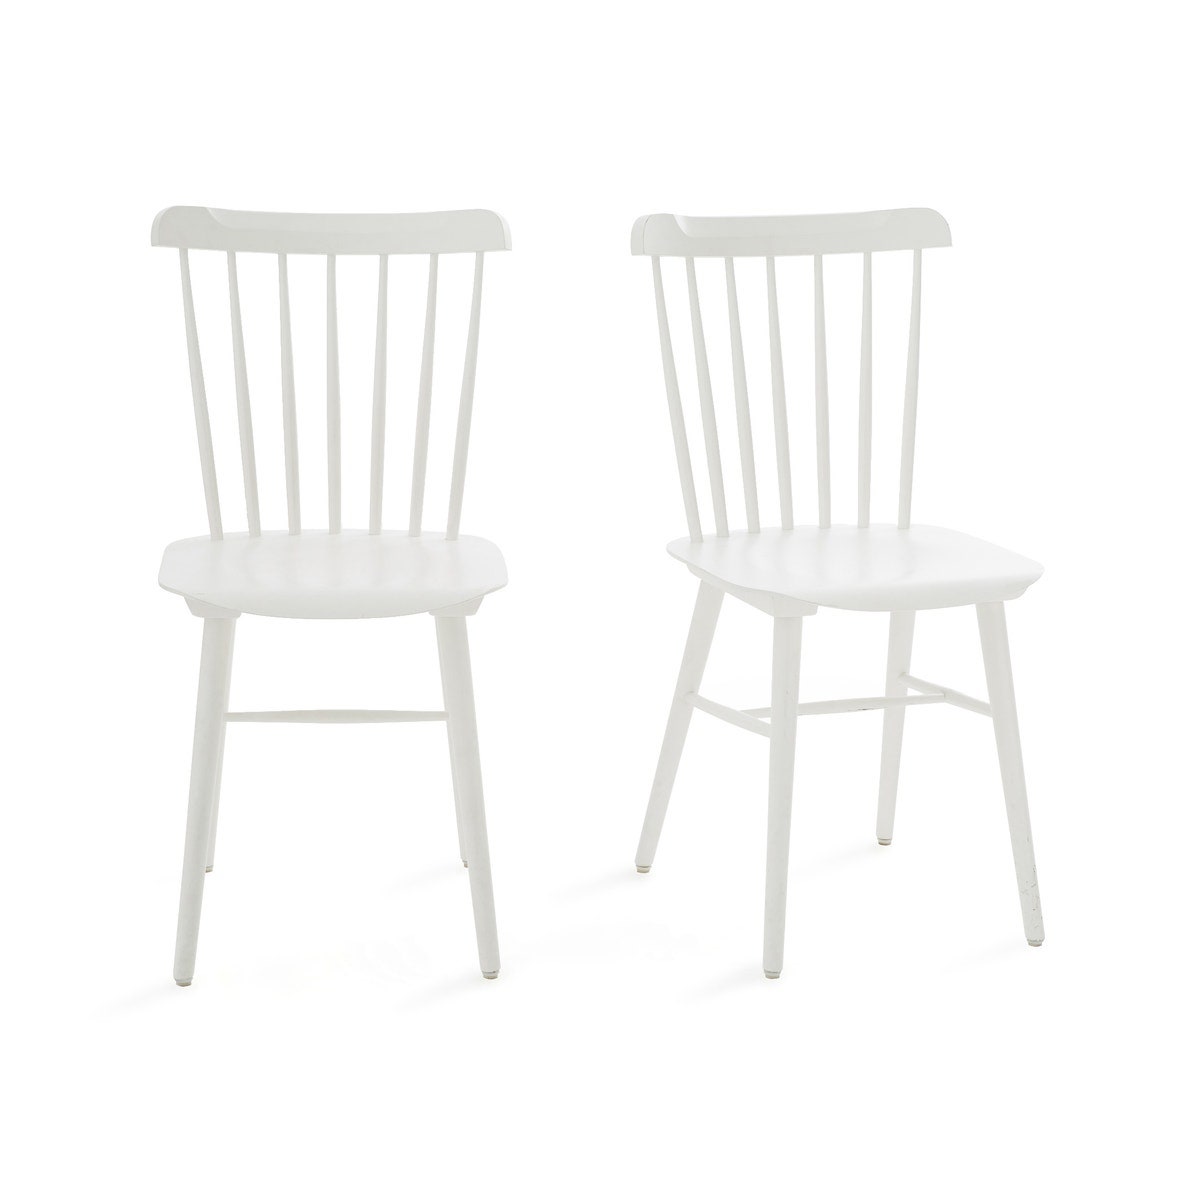 Комплект из двух стульев Ivy 29 136 руб.